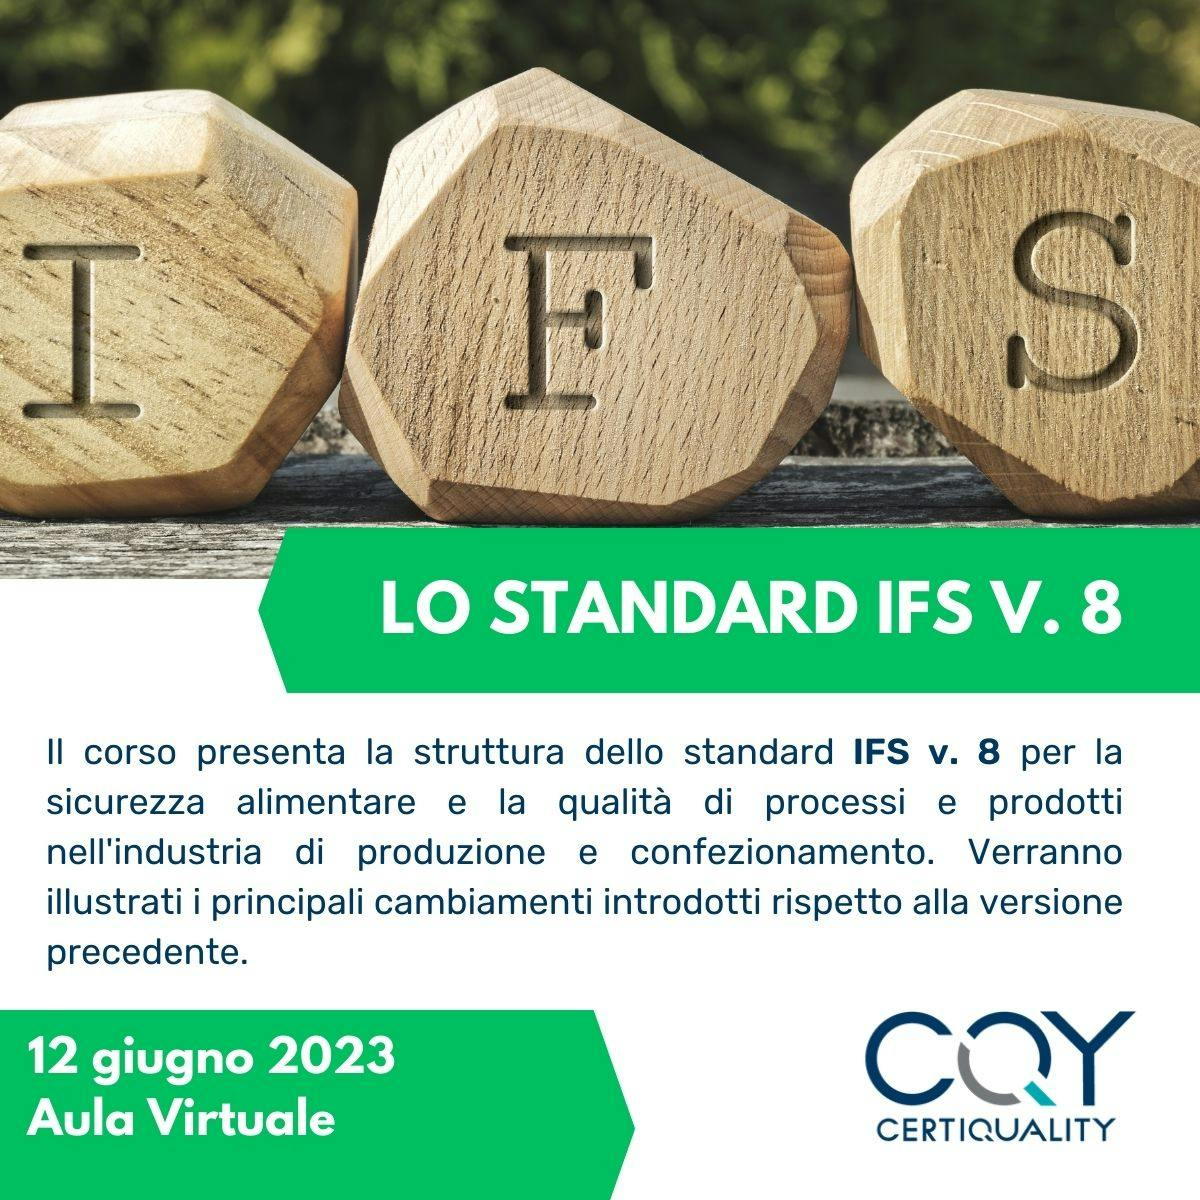 Lo standard IFS V. 8